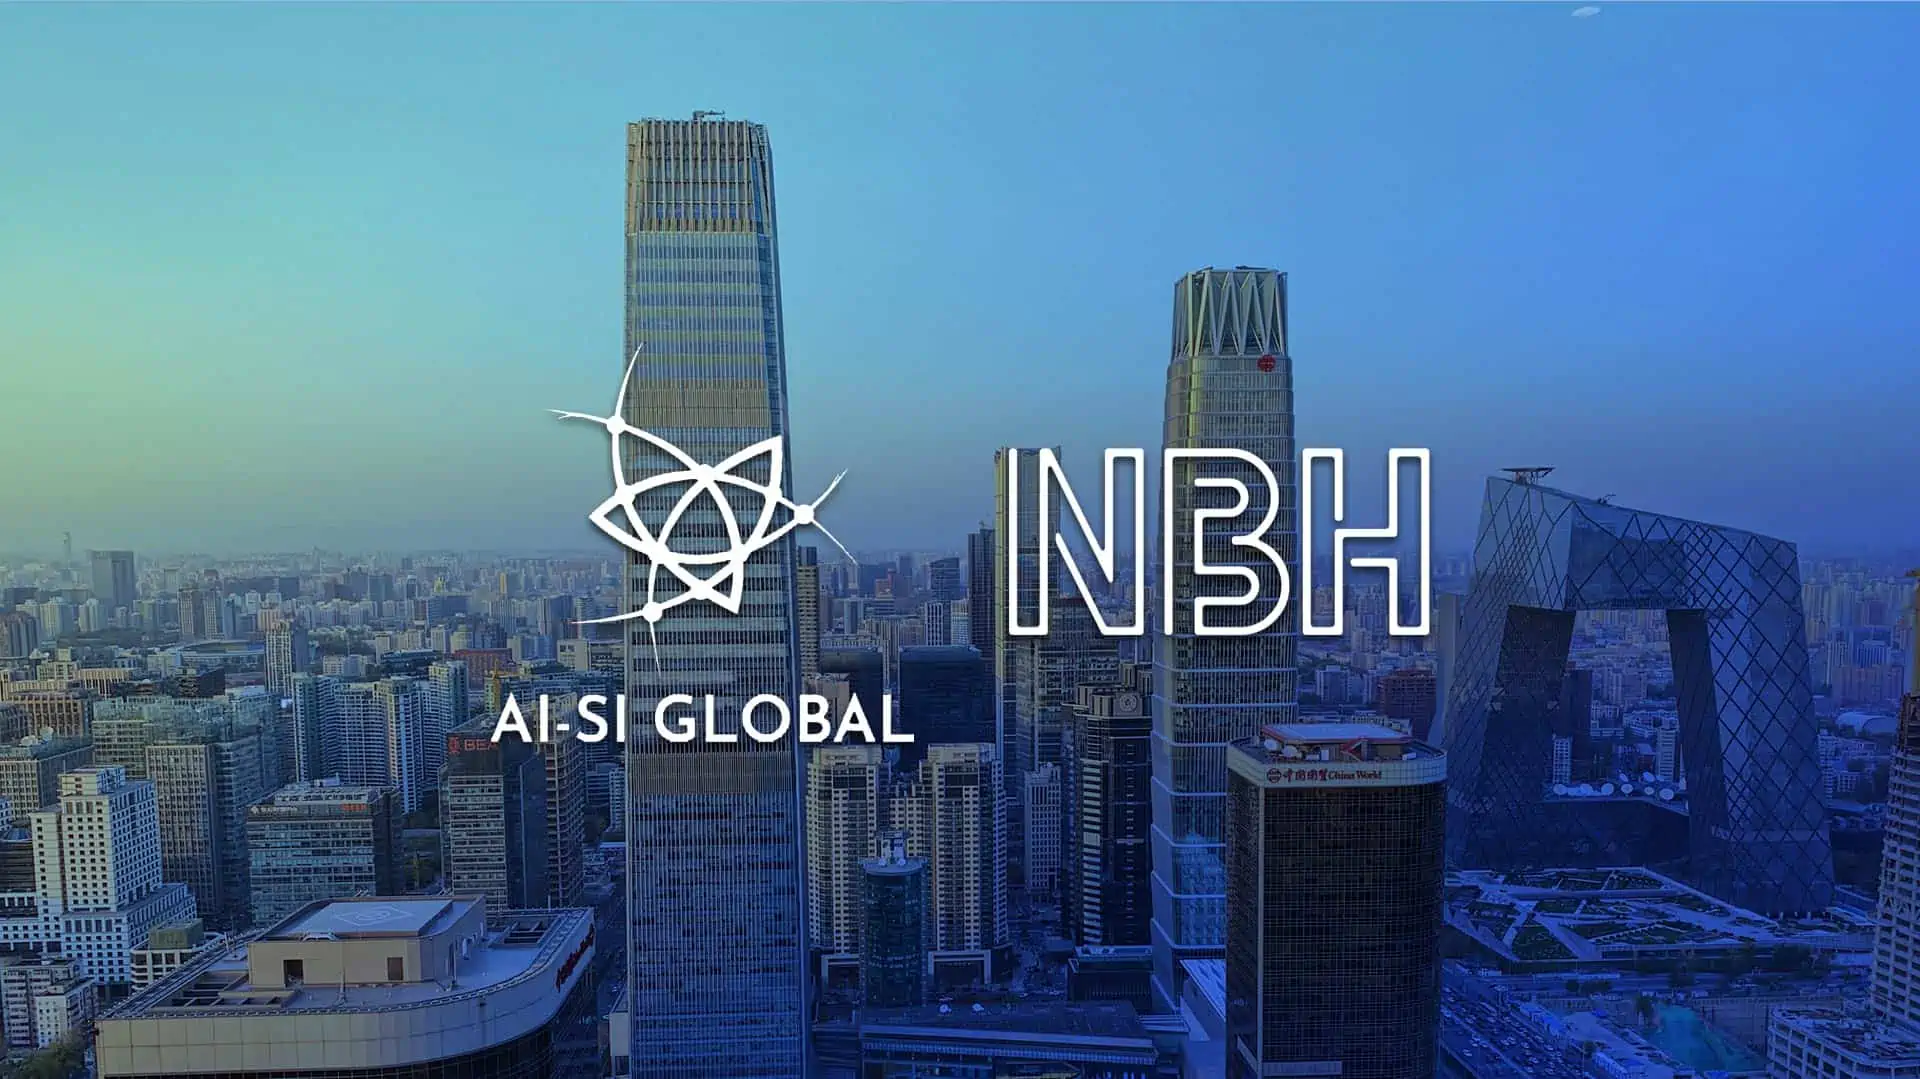 AI-SI Global og NBH går sammen om at bringe stærke brands fra Slovenien, Kroatien og Serbien til Kina